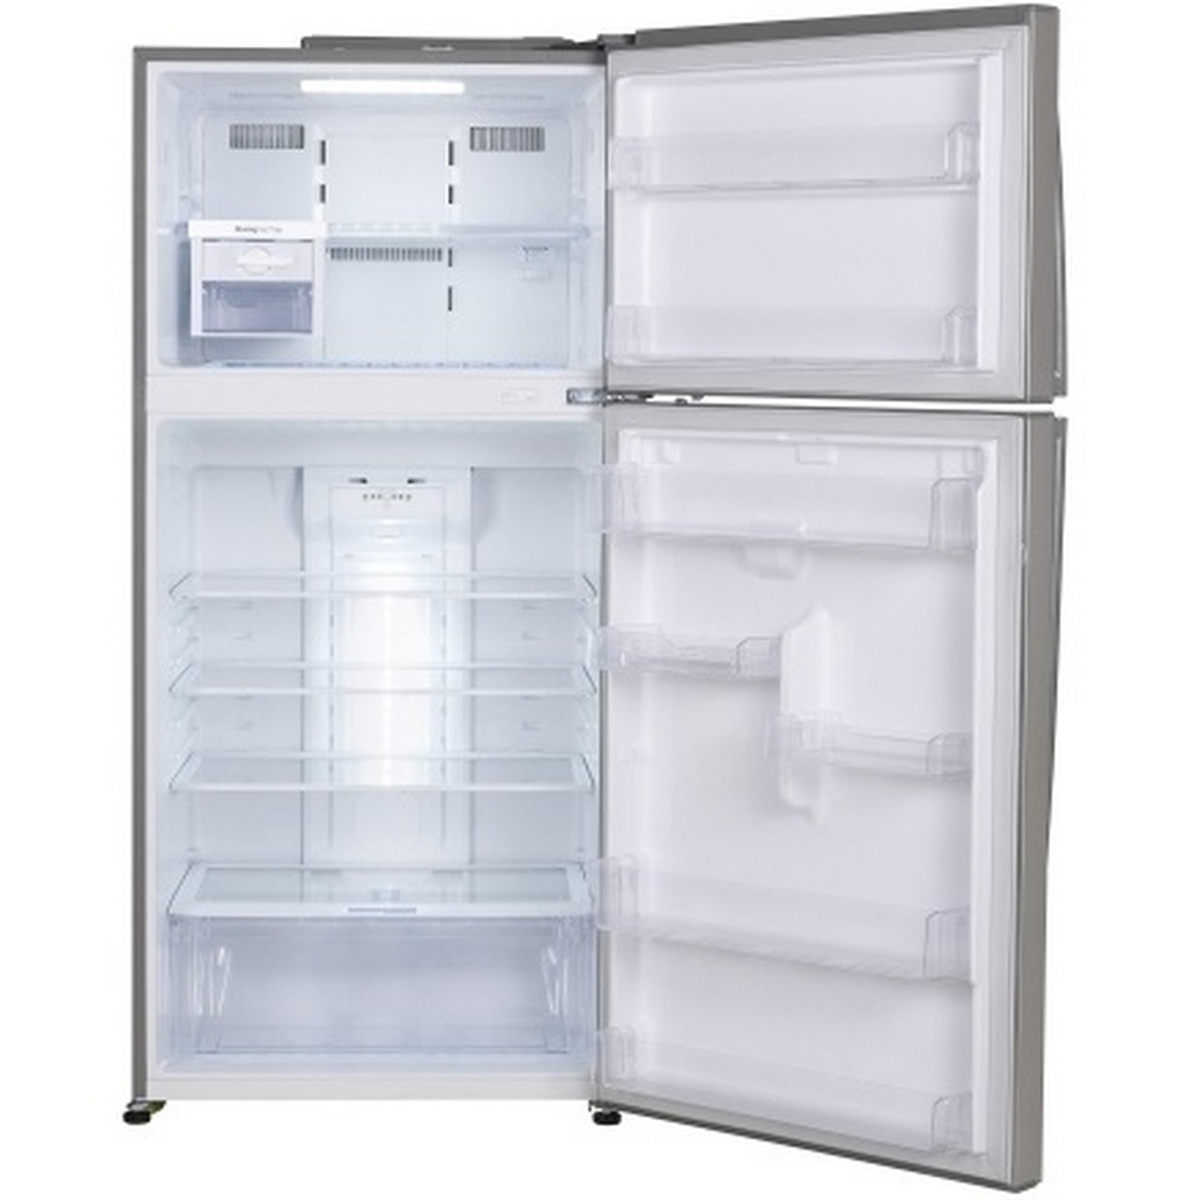 24+ Lg double door fridge price in qatar information